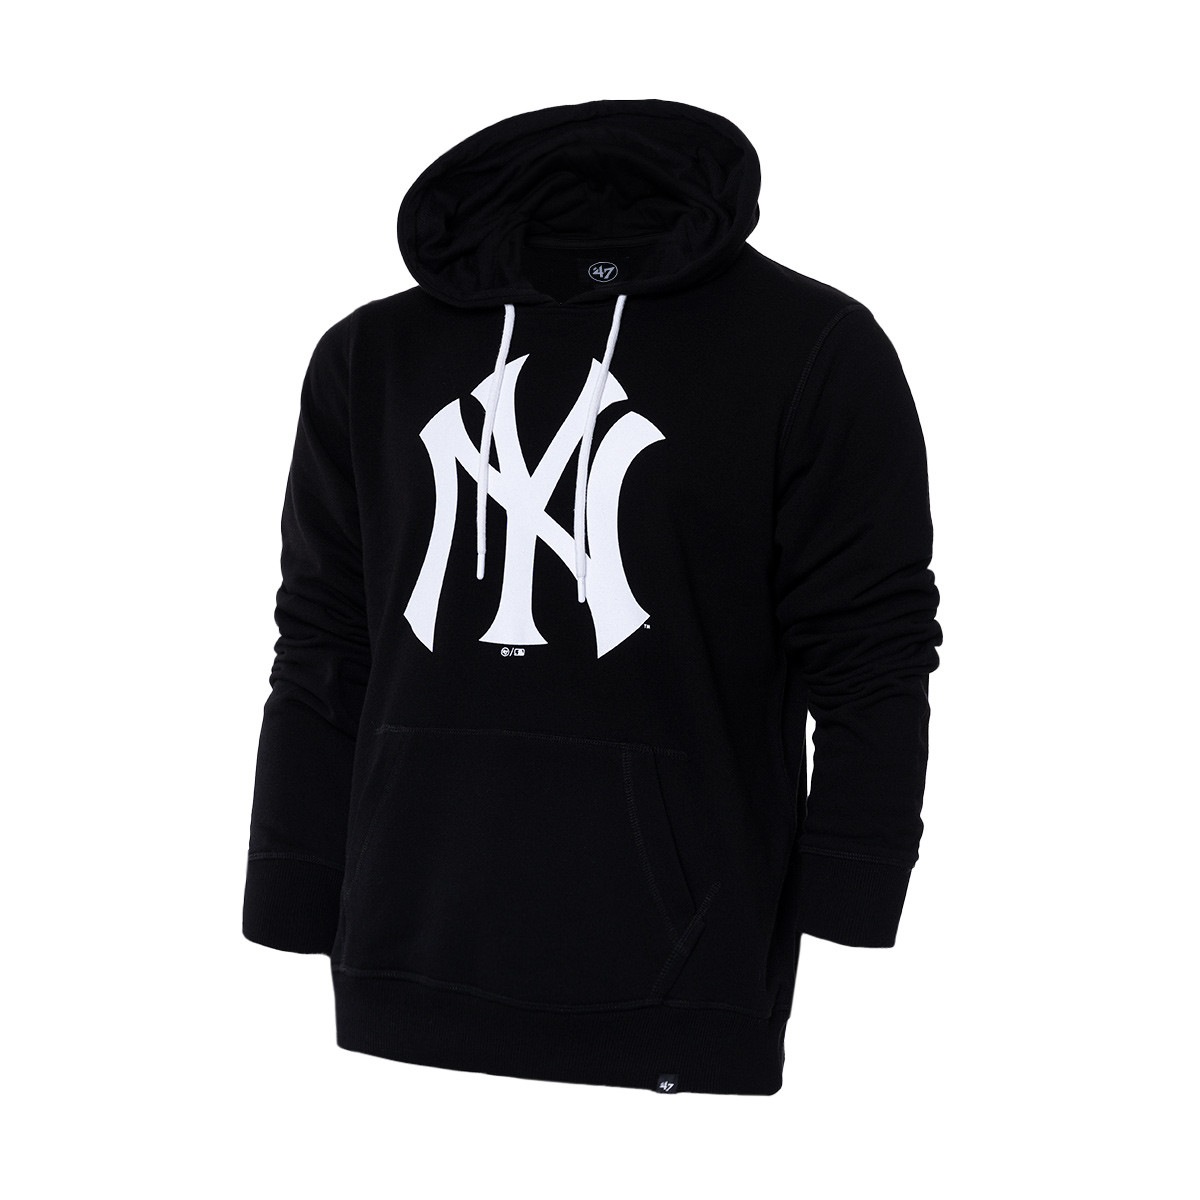 New York Yankees start spreading the news shirt, hoodie, sweater